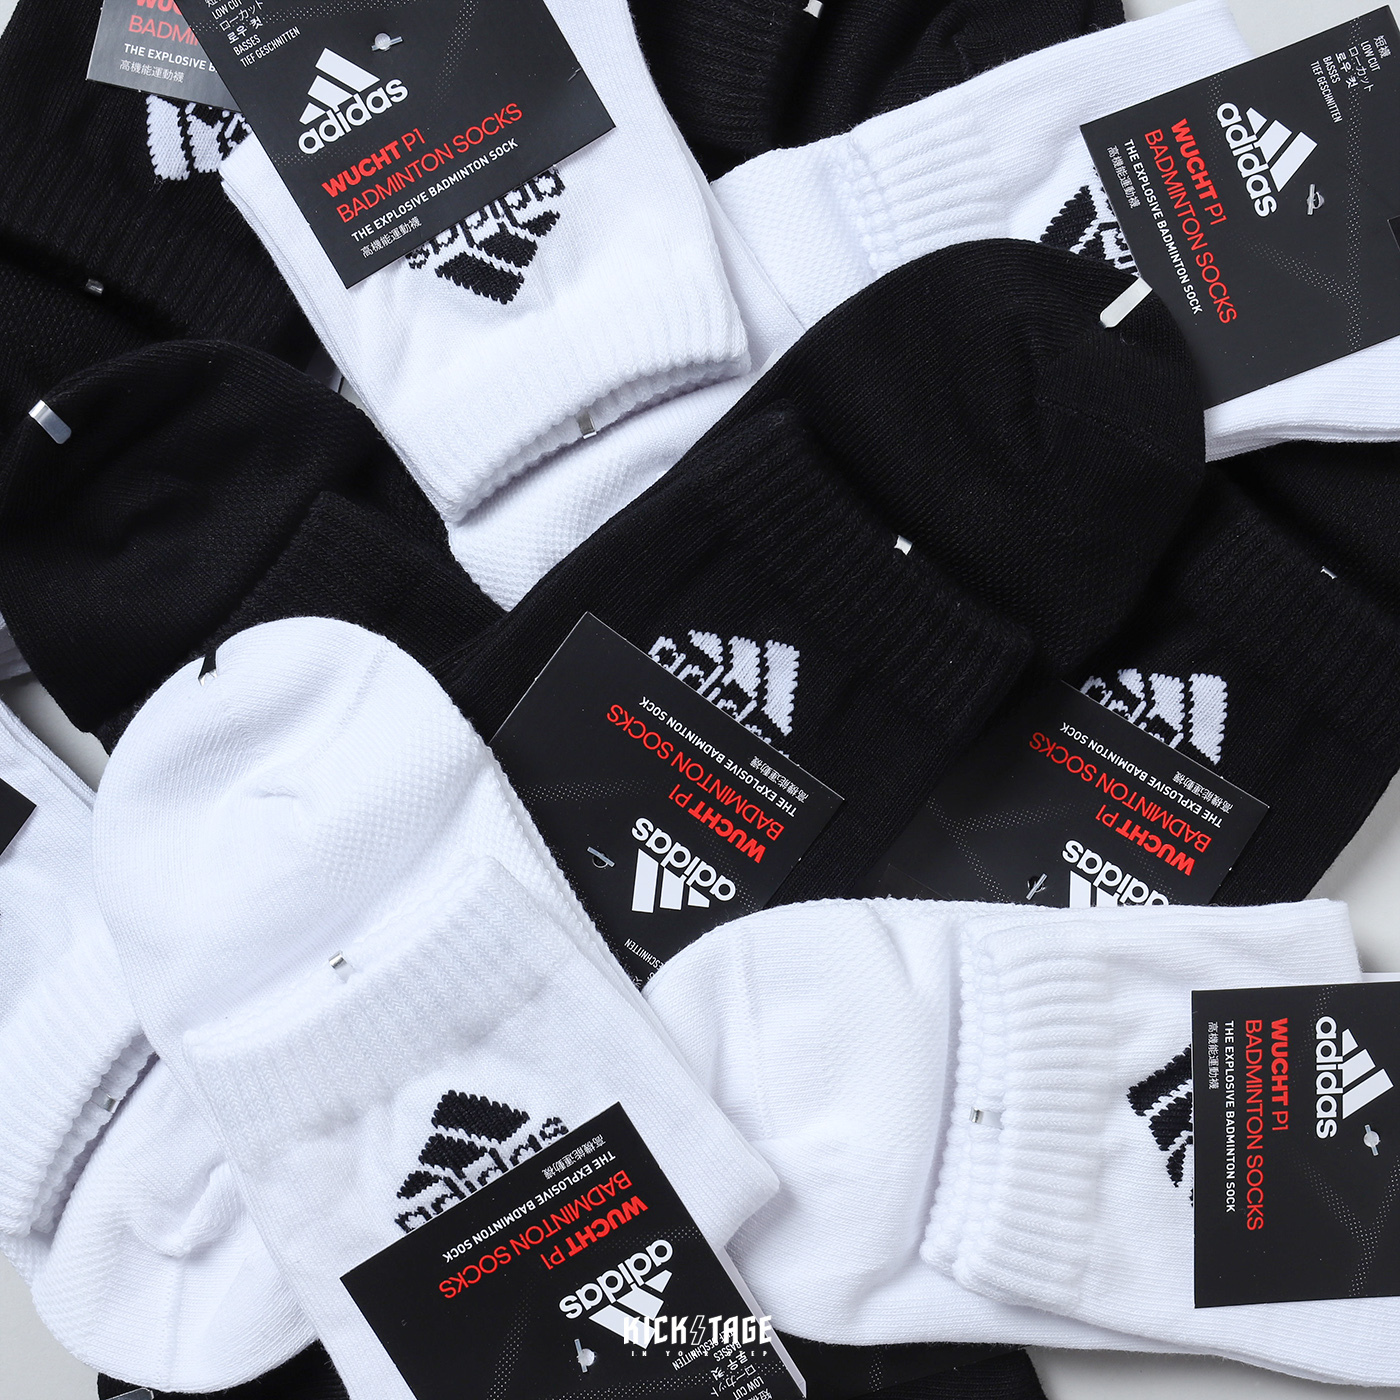 ADIDAS P1 EXPLOSIVE SOCKS 白色黑色高機能運動襪透氣短襪 